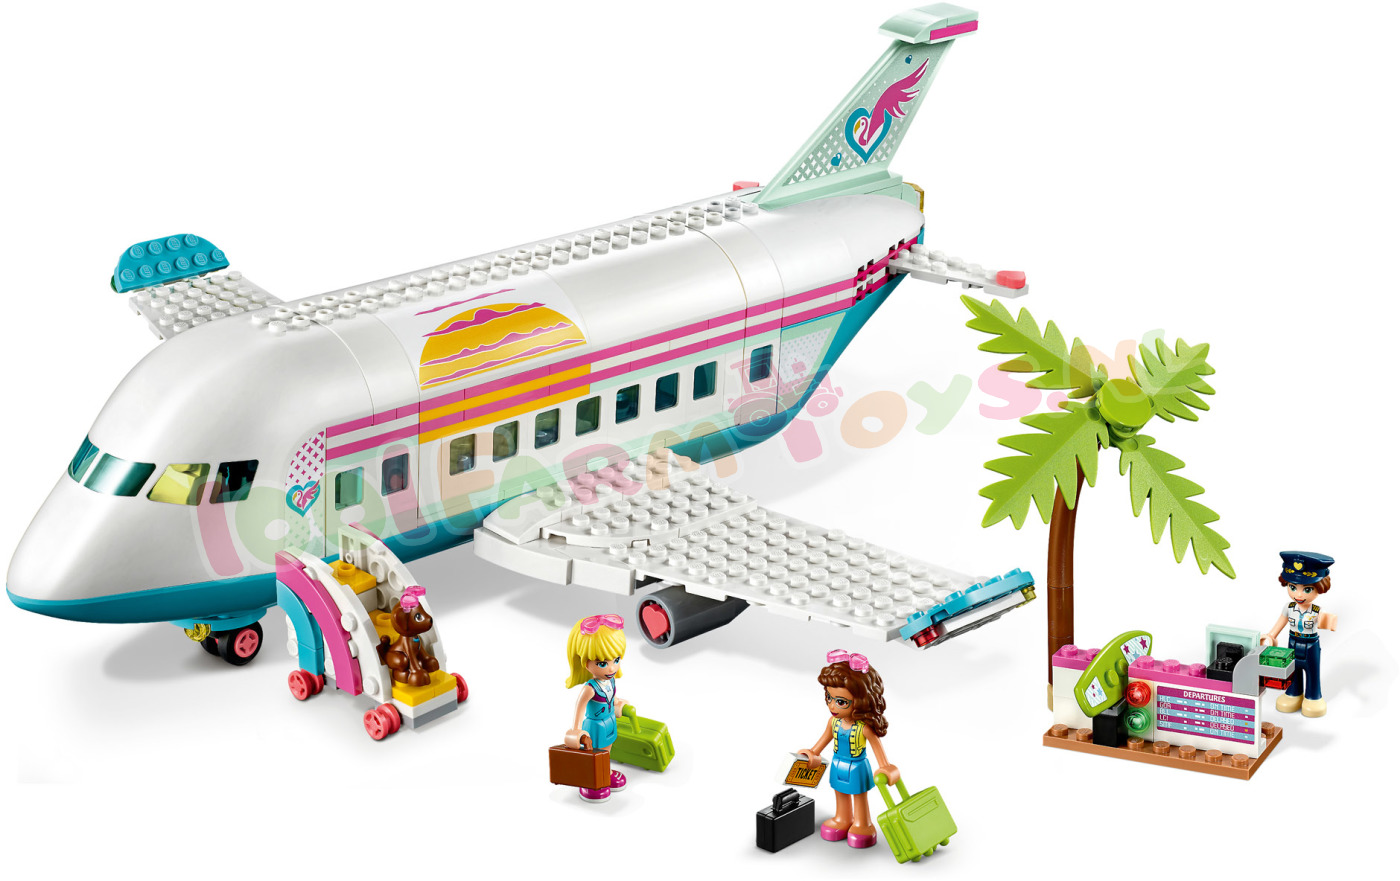 Wat Netelig nadering LEGO Friends Heartlake City vliegtuig - 41429 - Uitverkocht Farm -  1001Farmtoys landbouwspeelgoed - LET OP dit product wordt niet meer  geproduceerd